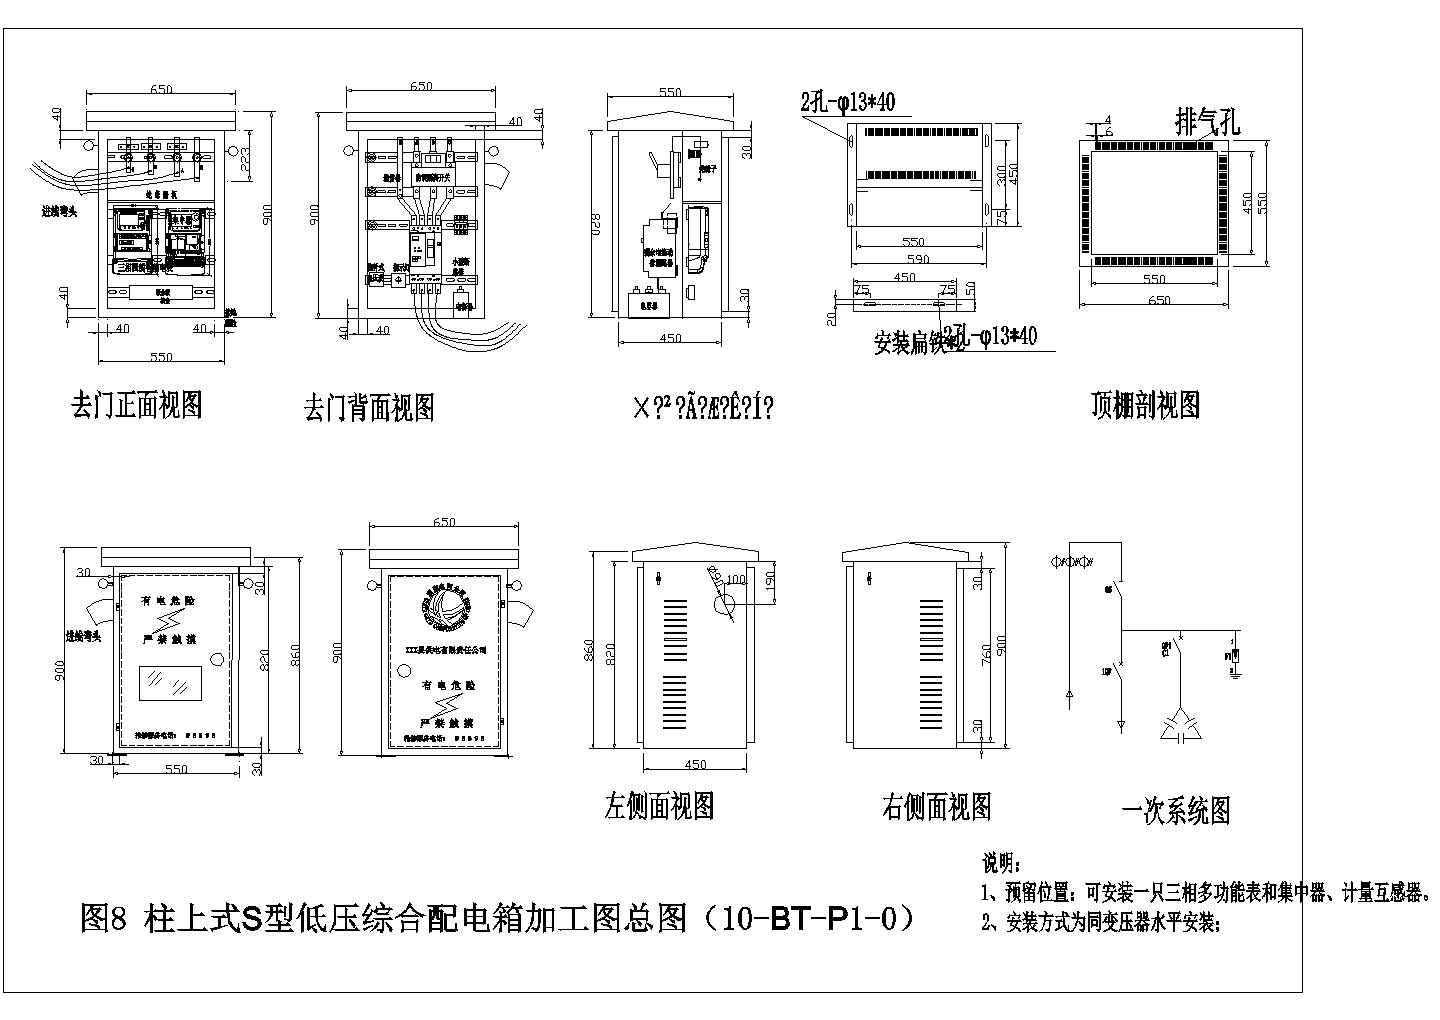 多种低压综合配电箱方案外形内部构造图纸